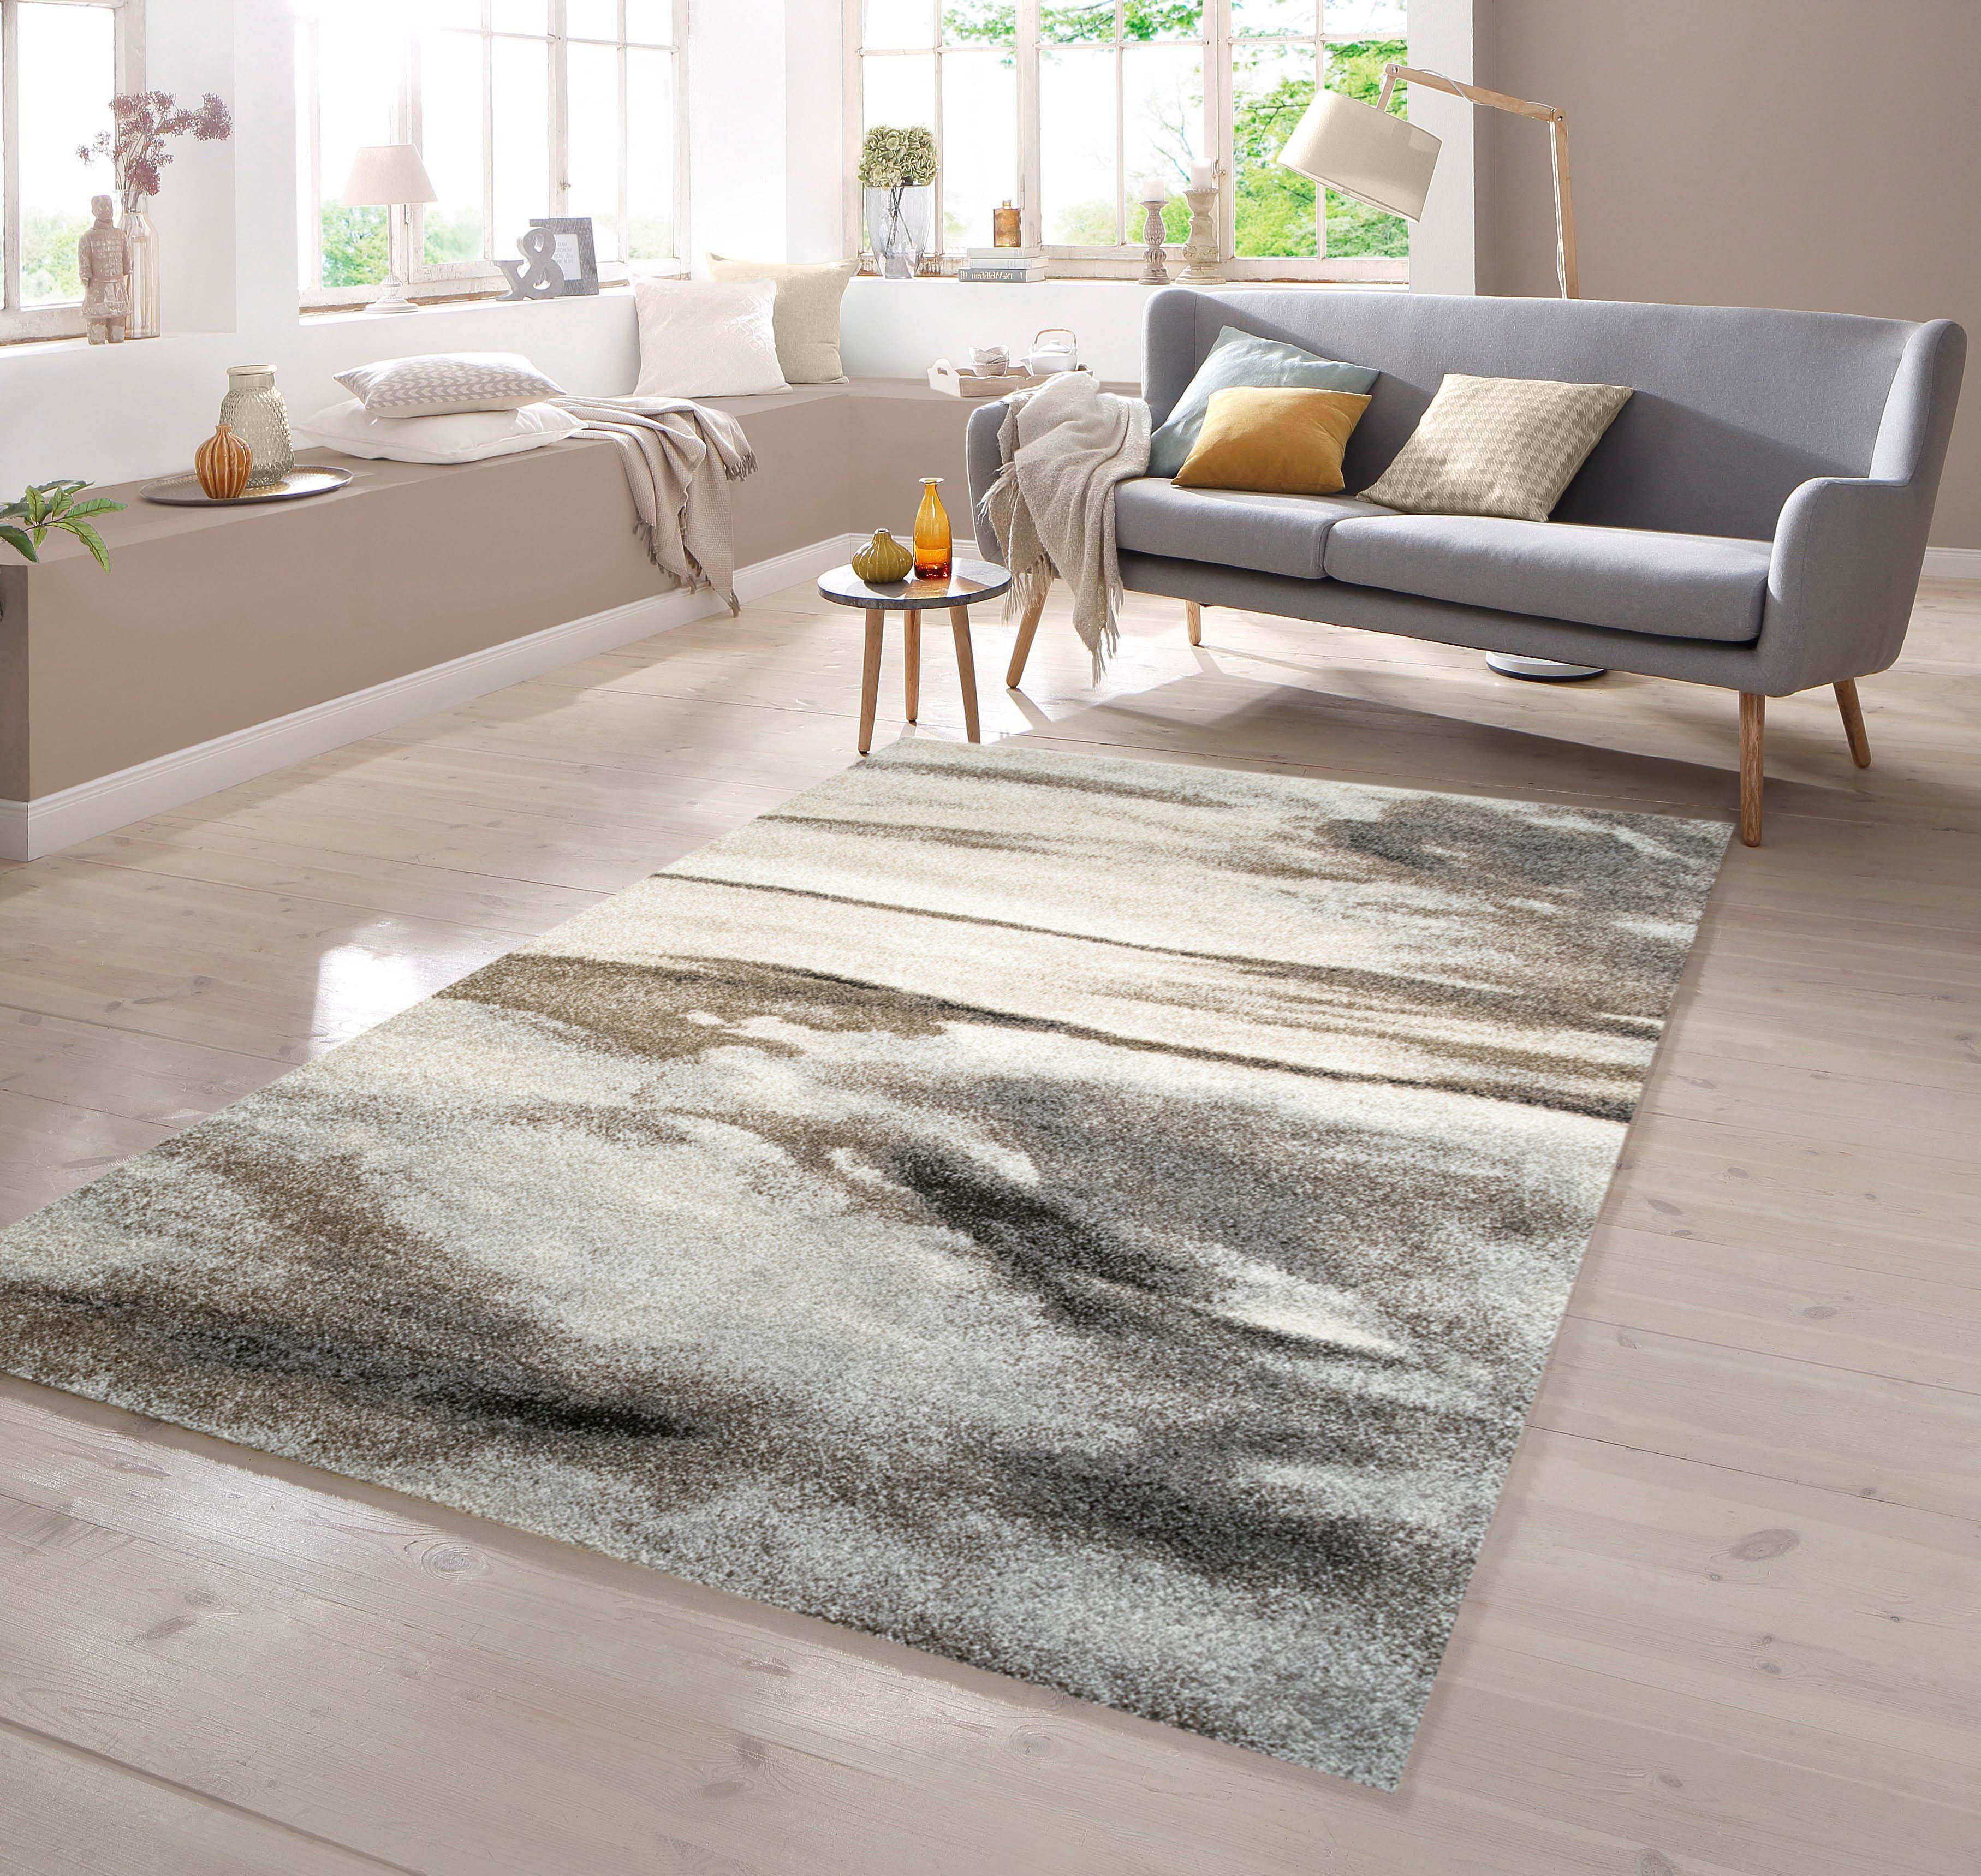 TeppichHome24, mit Grau, Taupe Braun Designer Barock Meliert in Design Teppich rechteckig Teppich